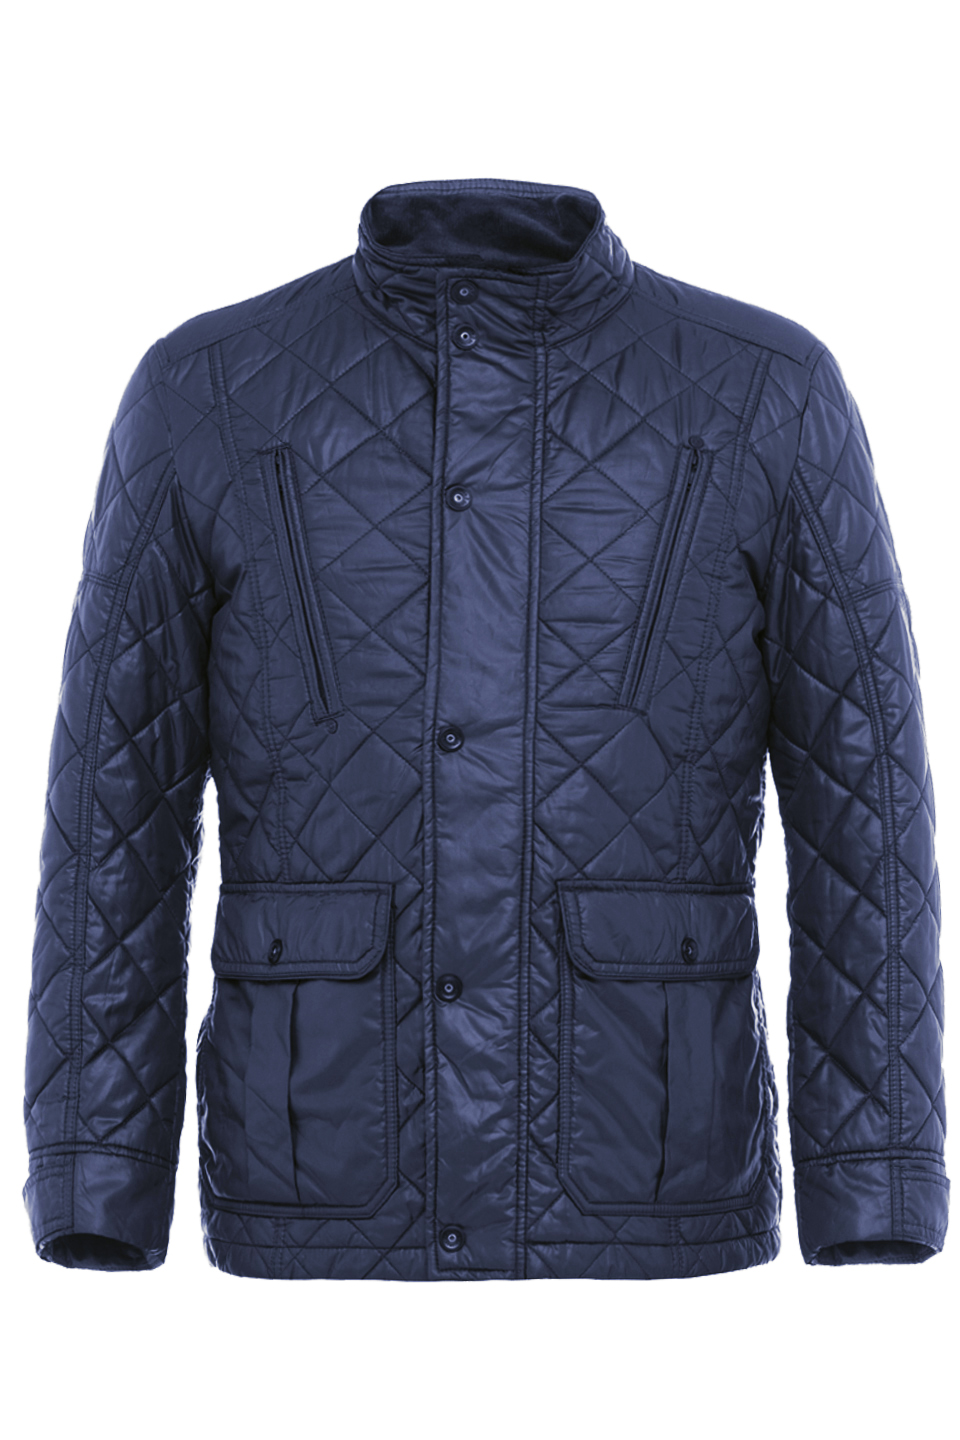 Куртка мужская Calamar - 130790-08